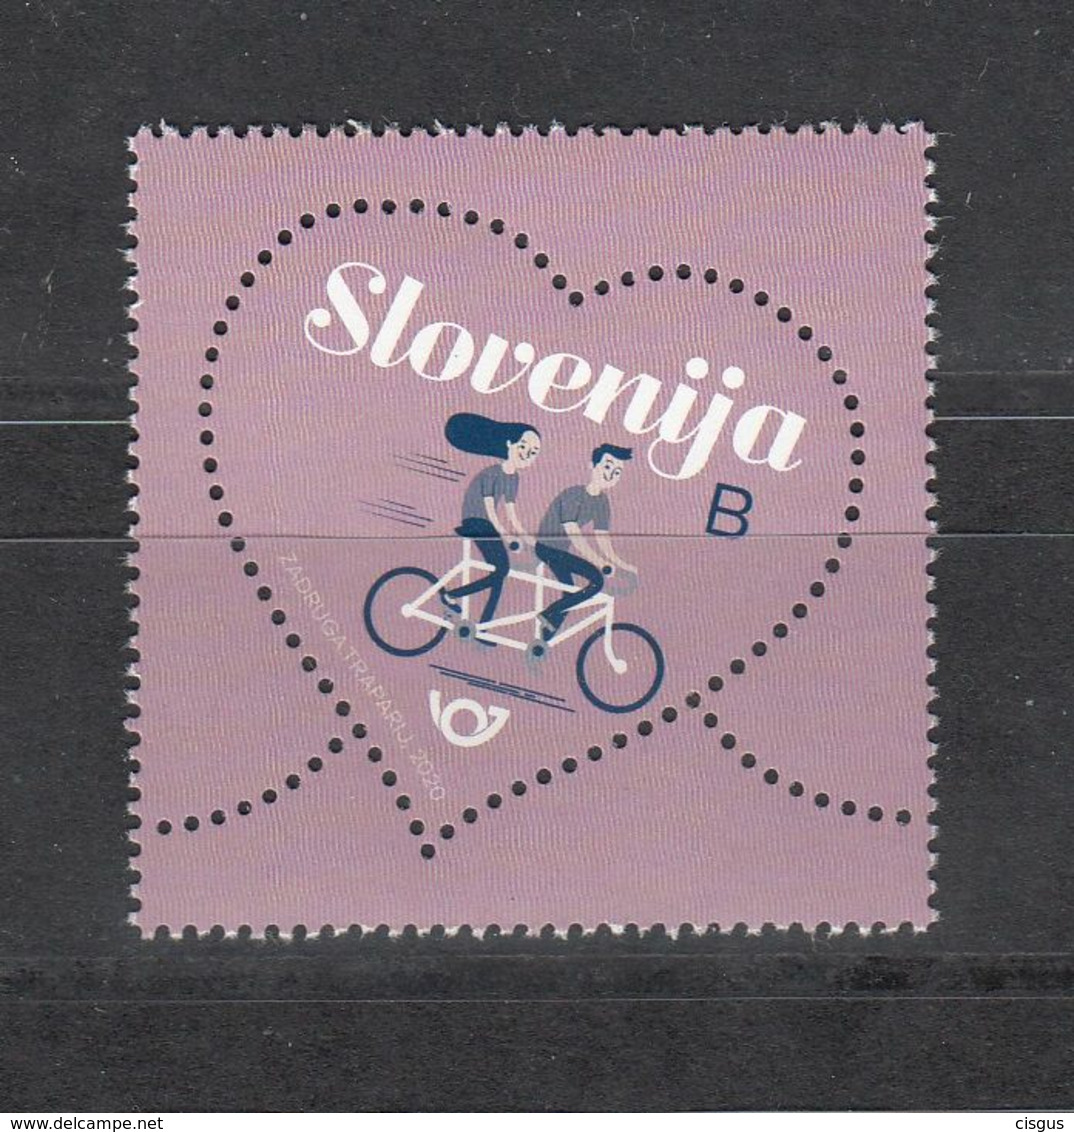 Slovenia Slowenien 2019 MNH** 2020-5 Greetings Stamp - Love - Slovénie